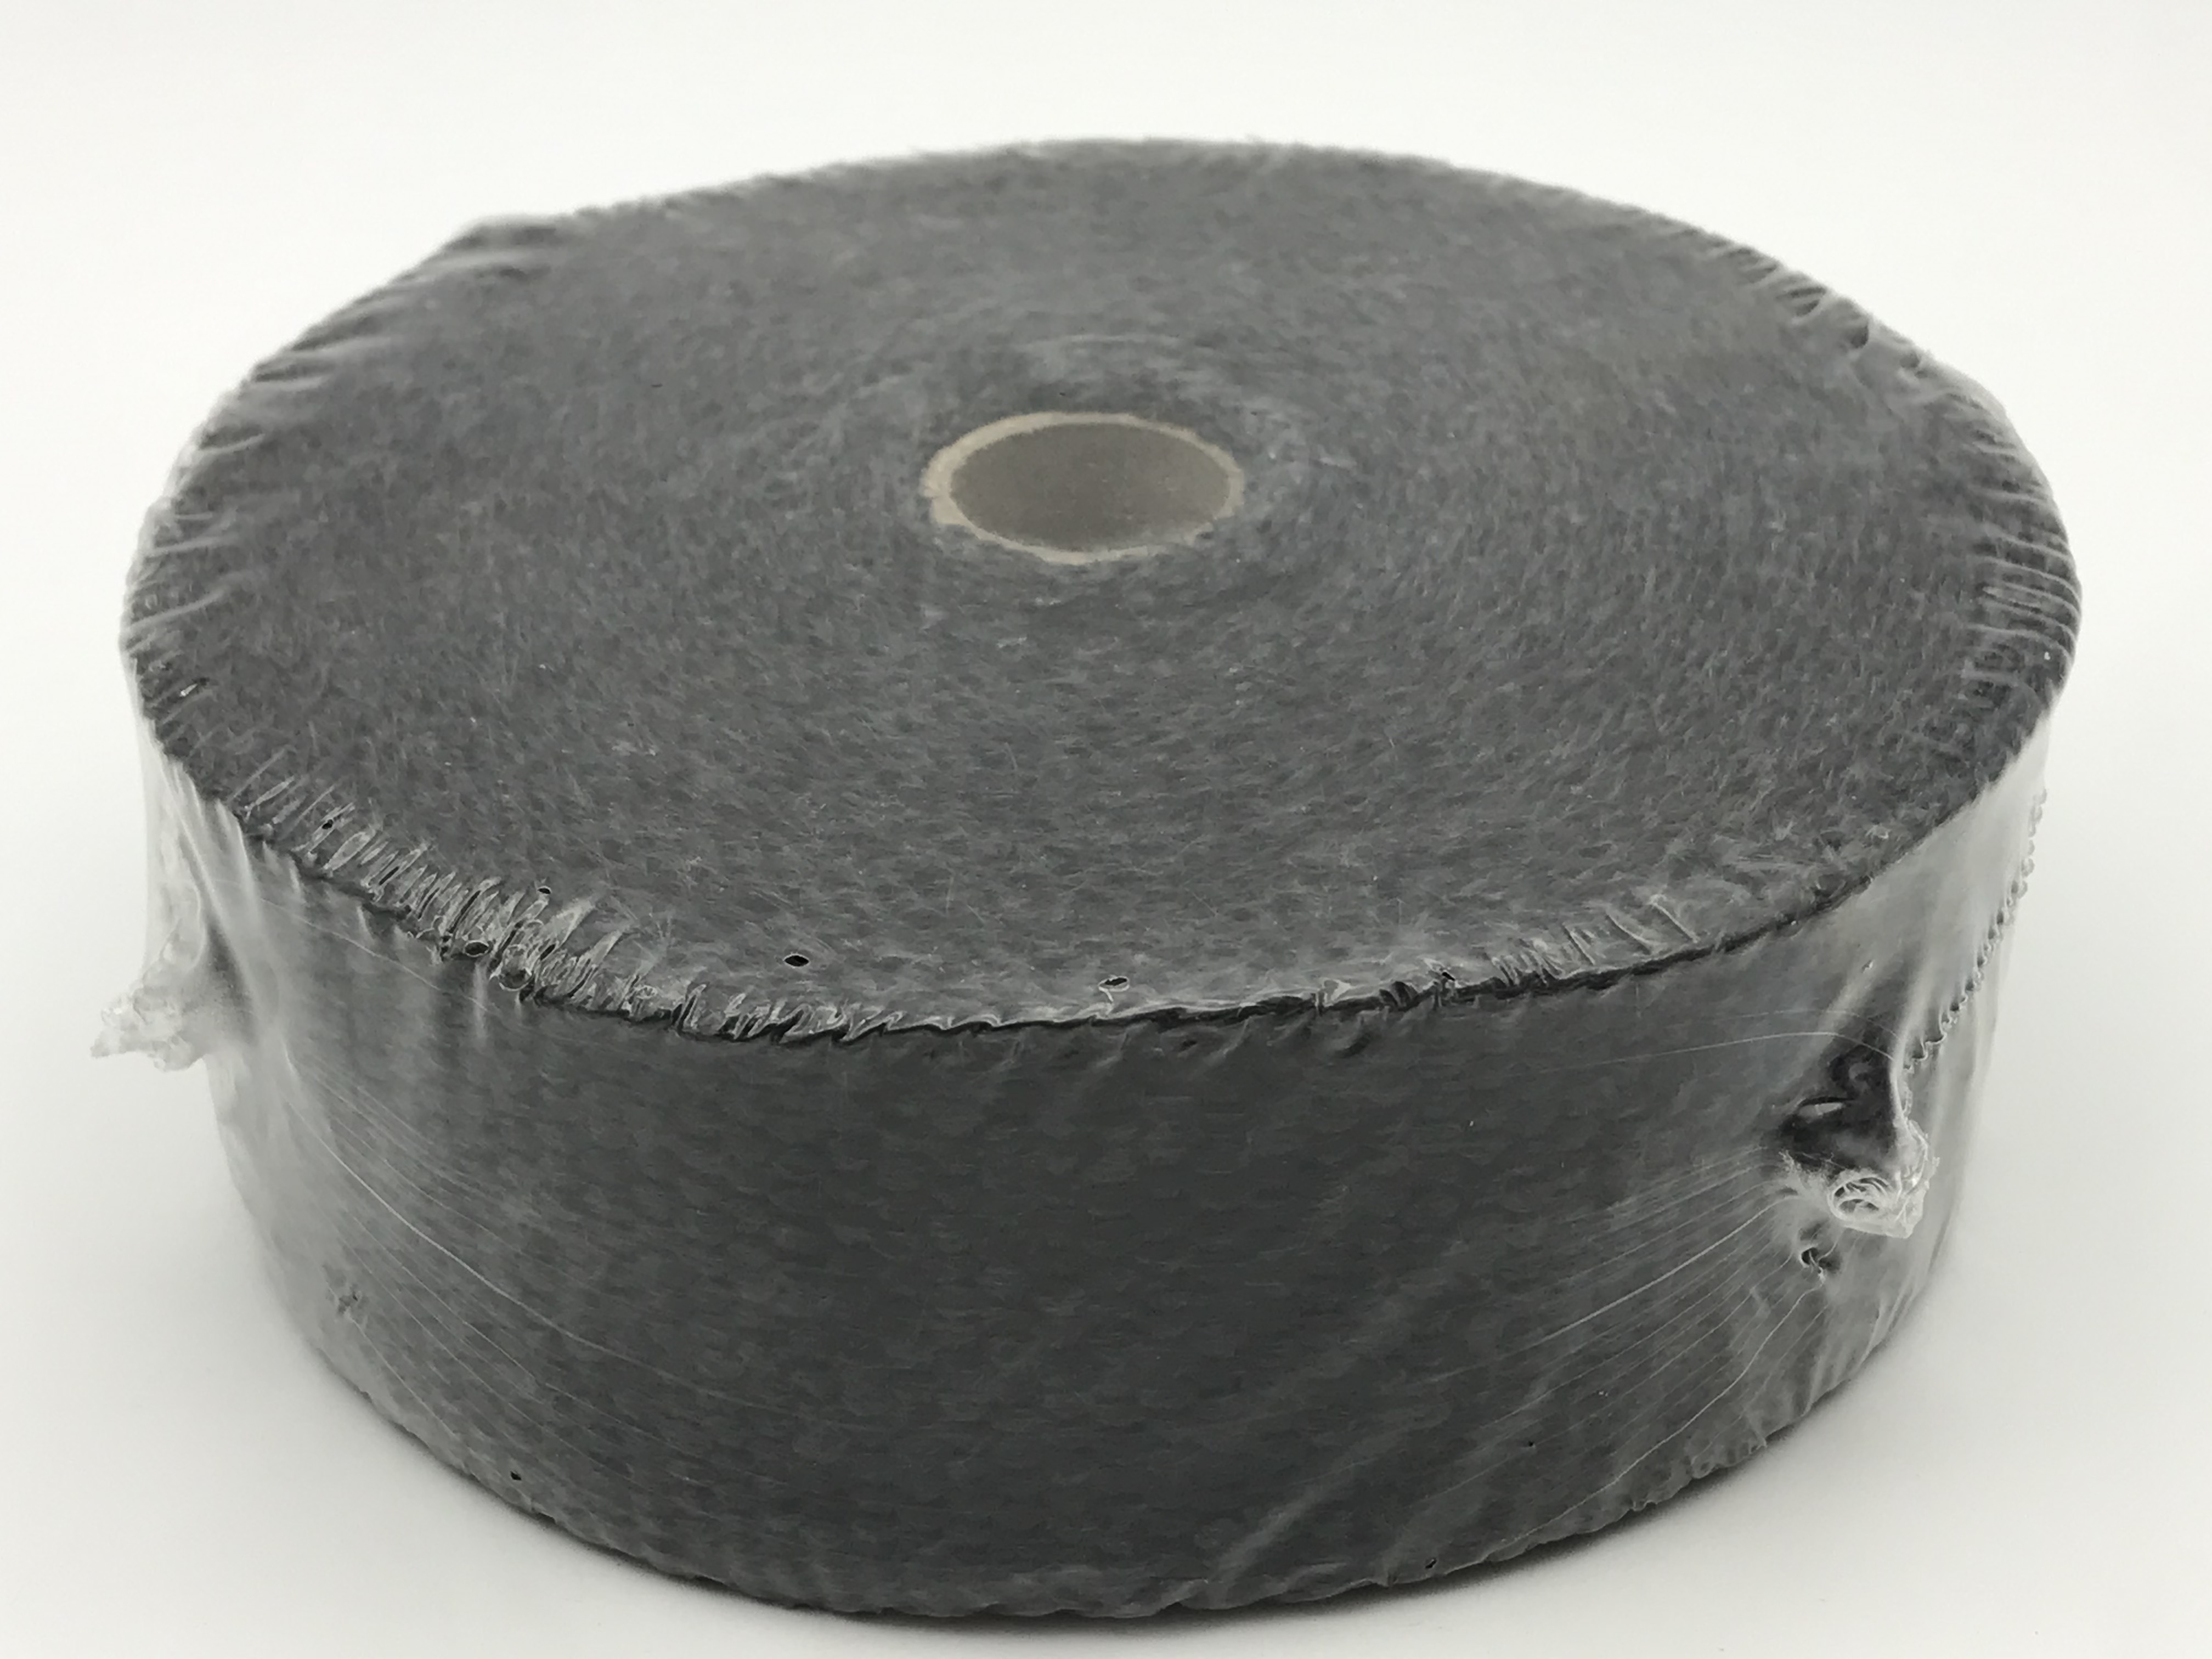 ผ้าพันท่อ ยาว10เมตร สีดำ ผ้าพันท่อ ไอเสีย เฮดเดอร์ความกว้าง 2 นิ้ว ใช้ป้องกันความร้อนที่ท่อไอเสีย